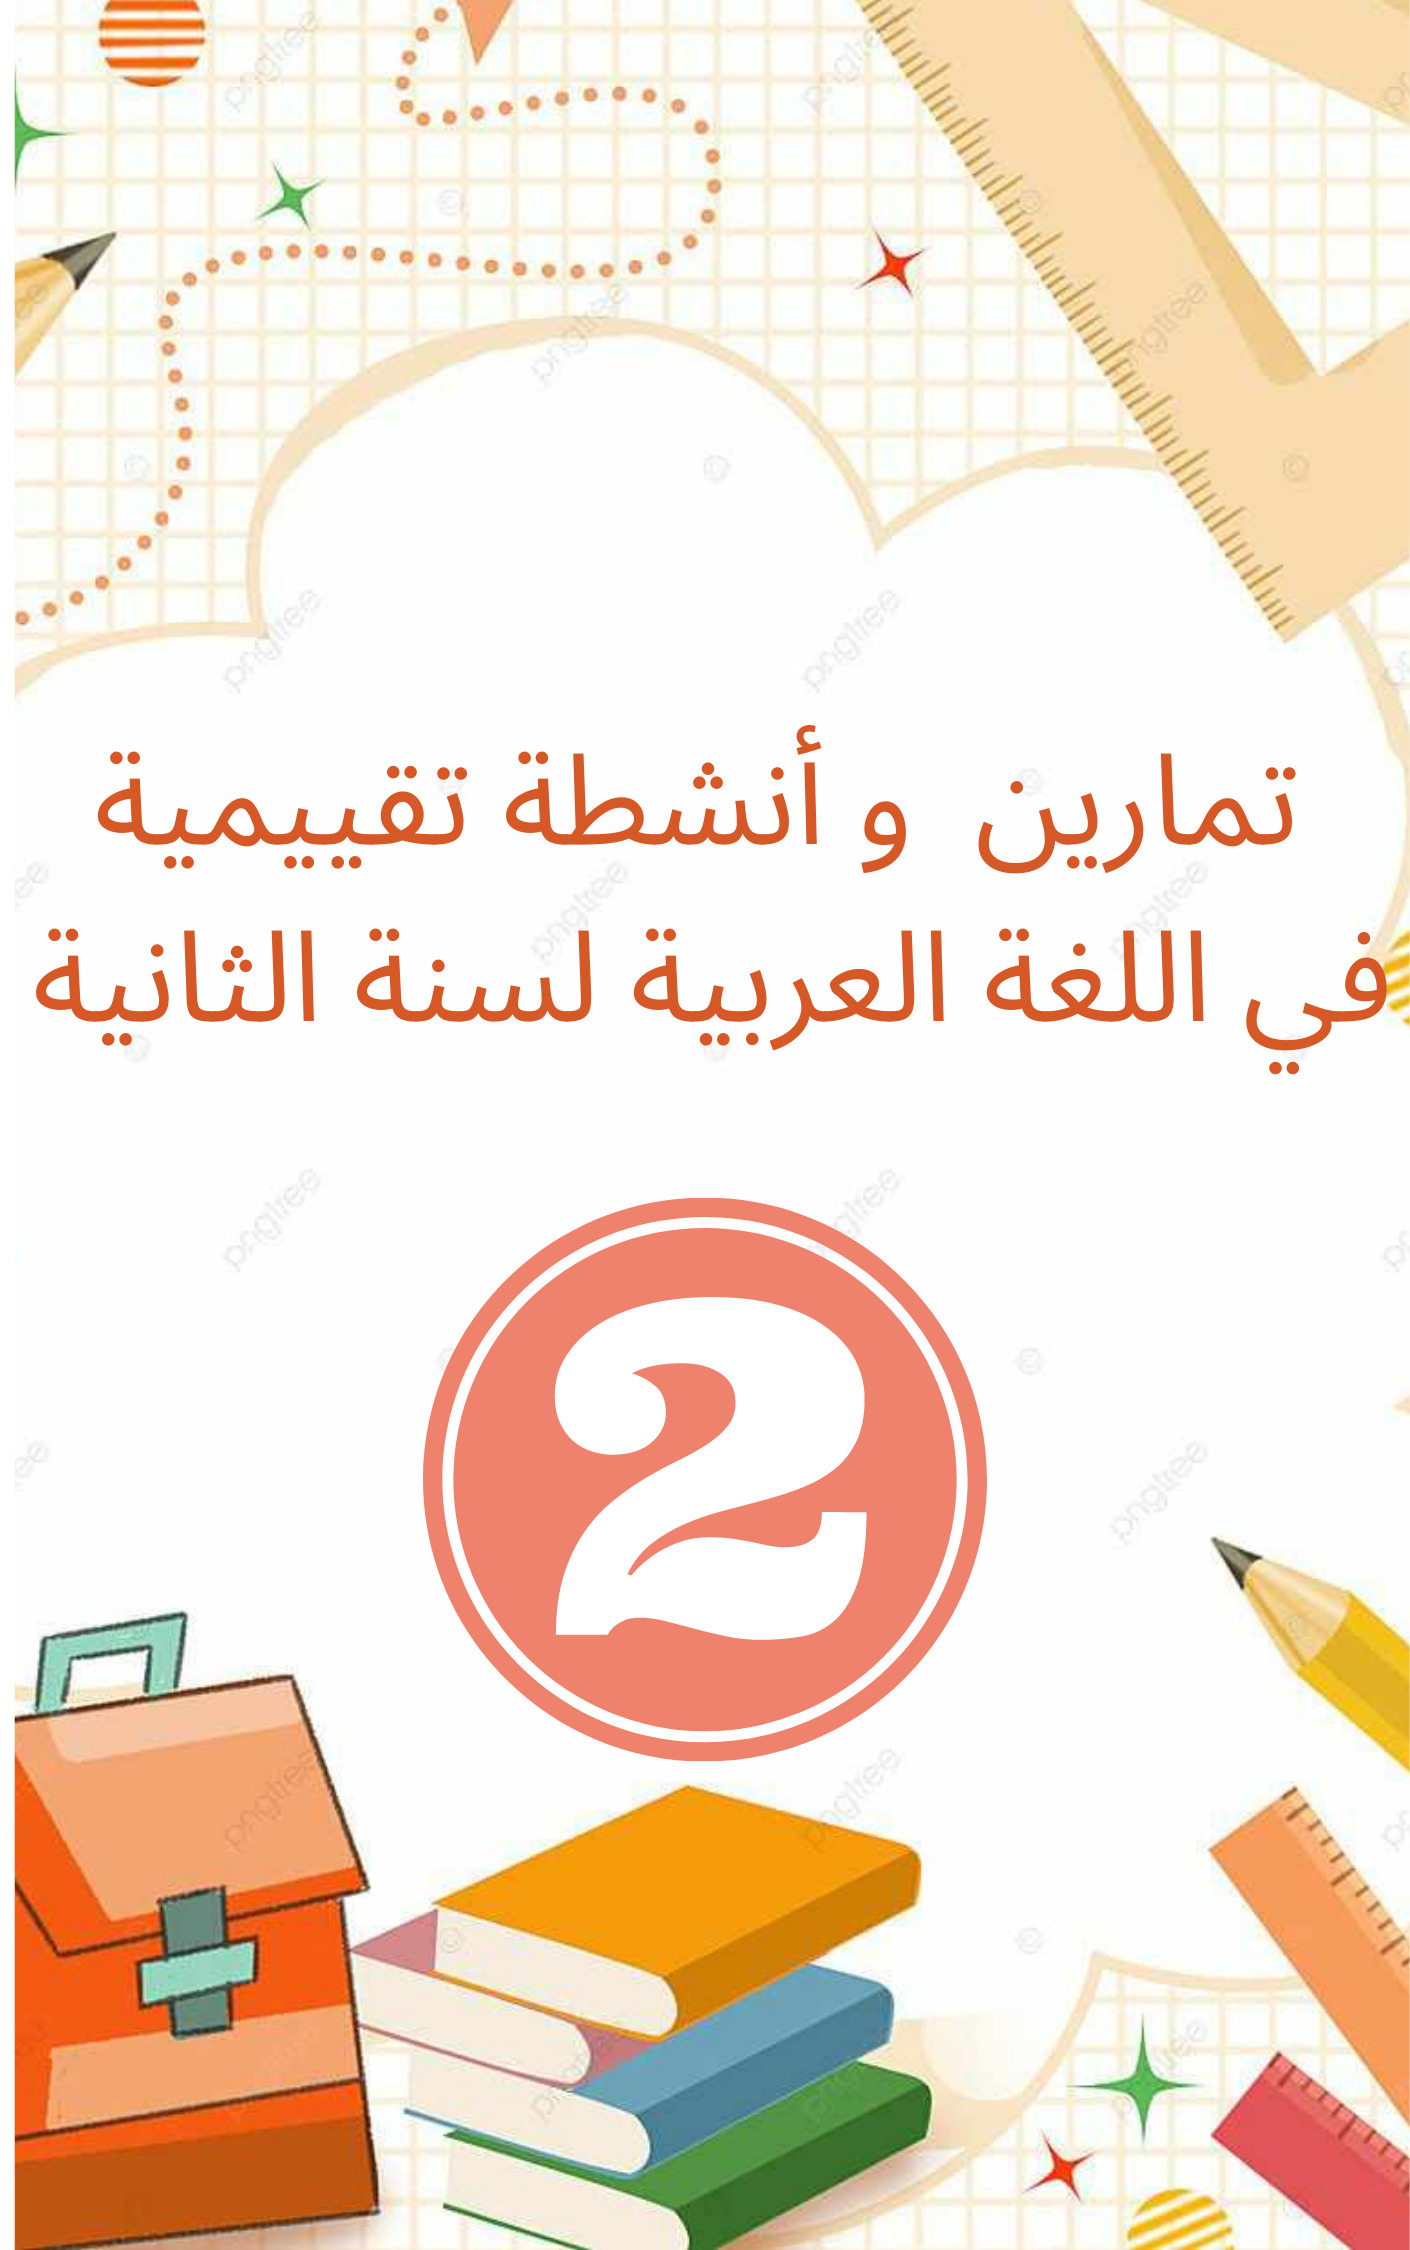 تقييم في اللغة العربية سنة 2